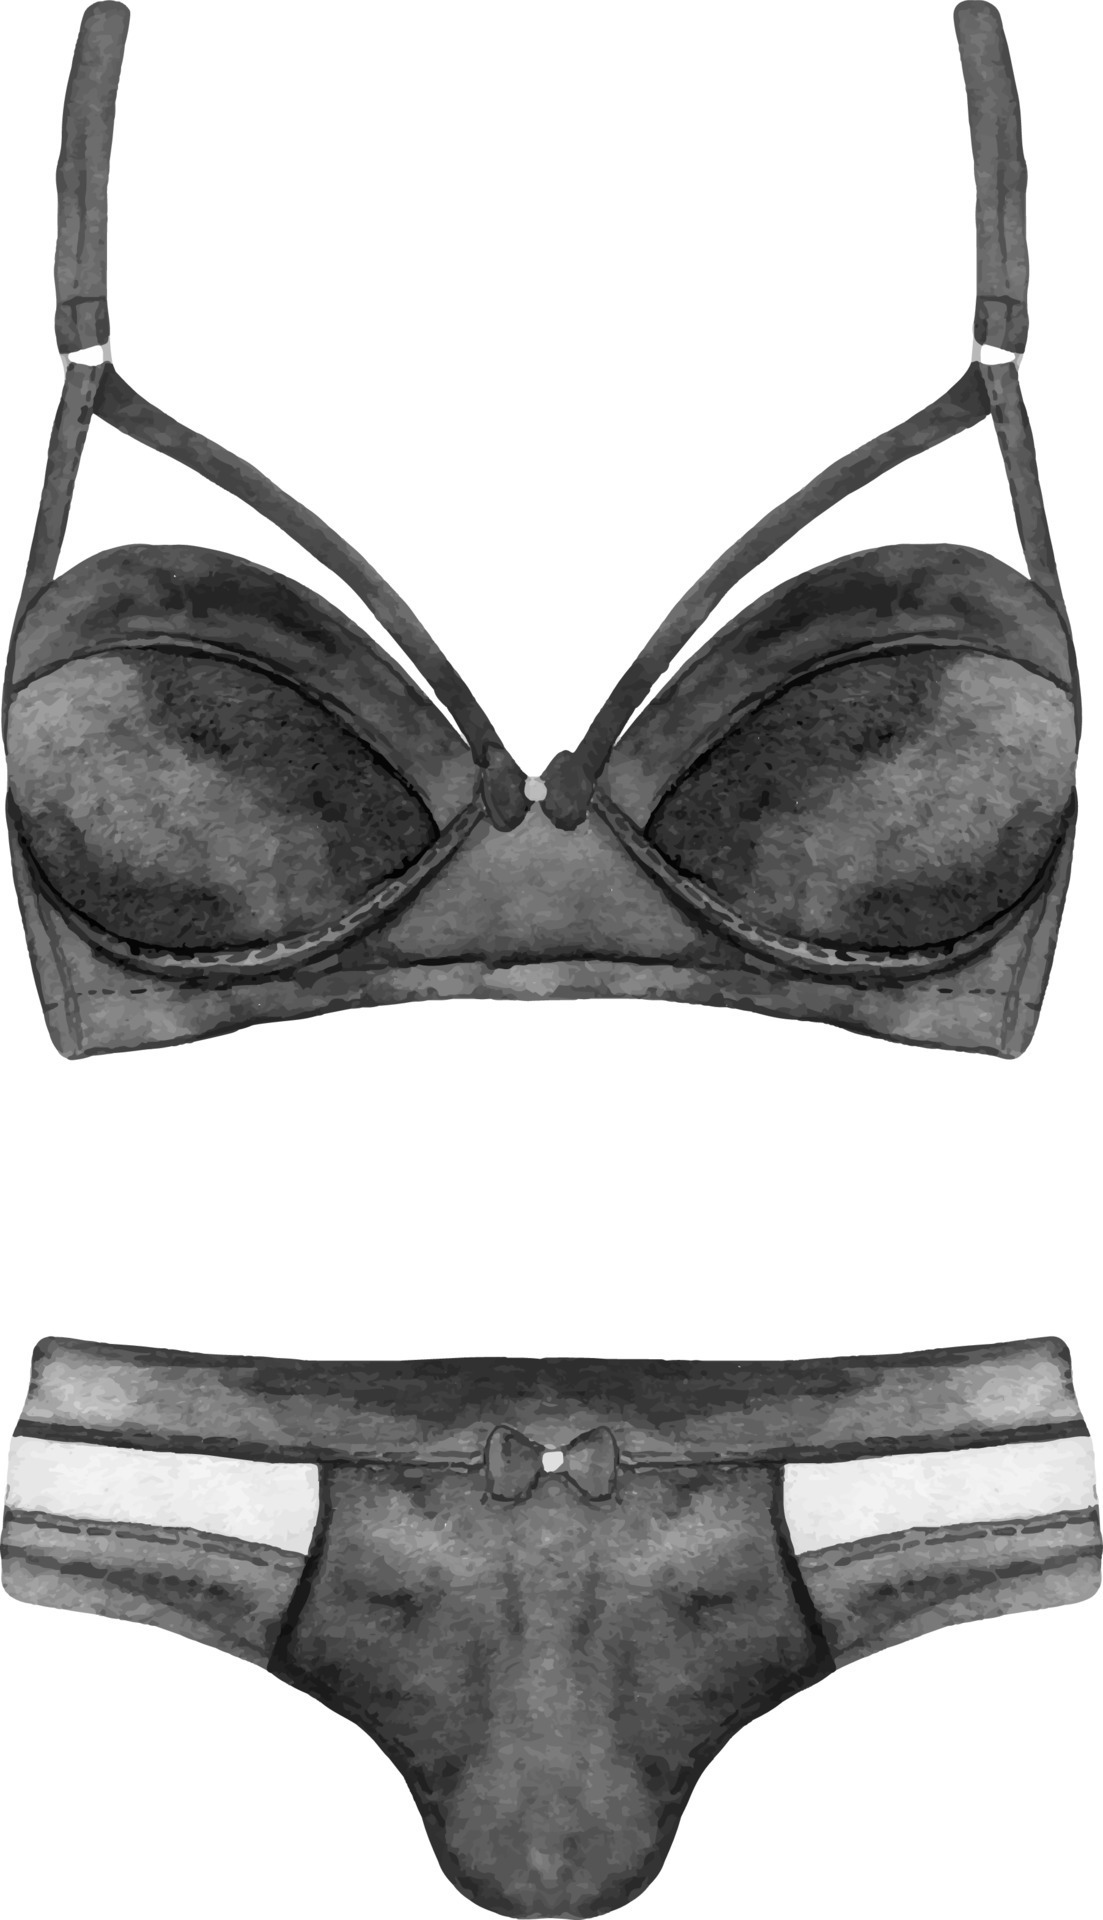 https://static.vecteezy.com/system/resources/previews/012/714/910/original/watercolor-black-woman-lingerie-lace-underwear-illustration-bridal-shower-party-lingerie-set-clipart-vector.jpg